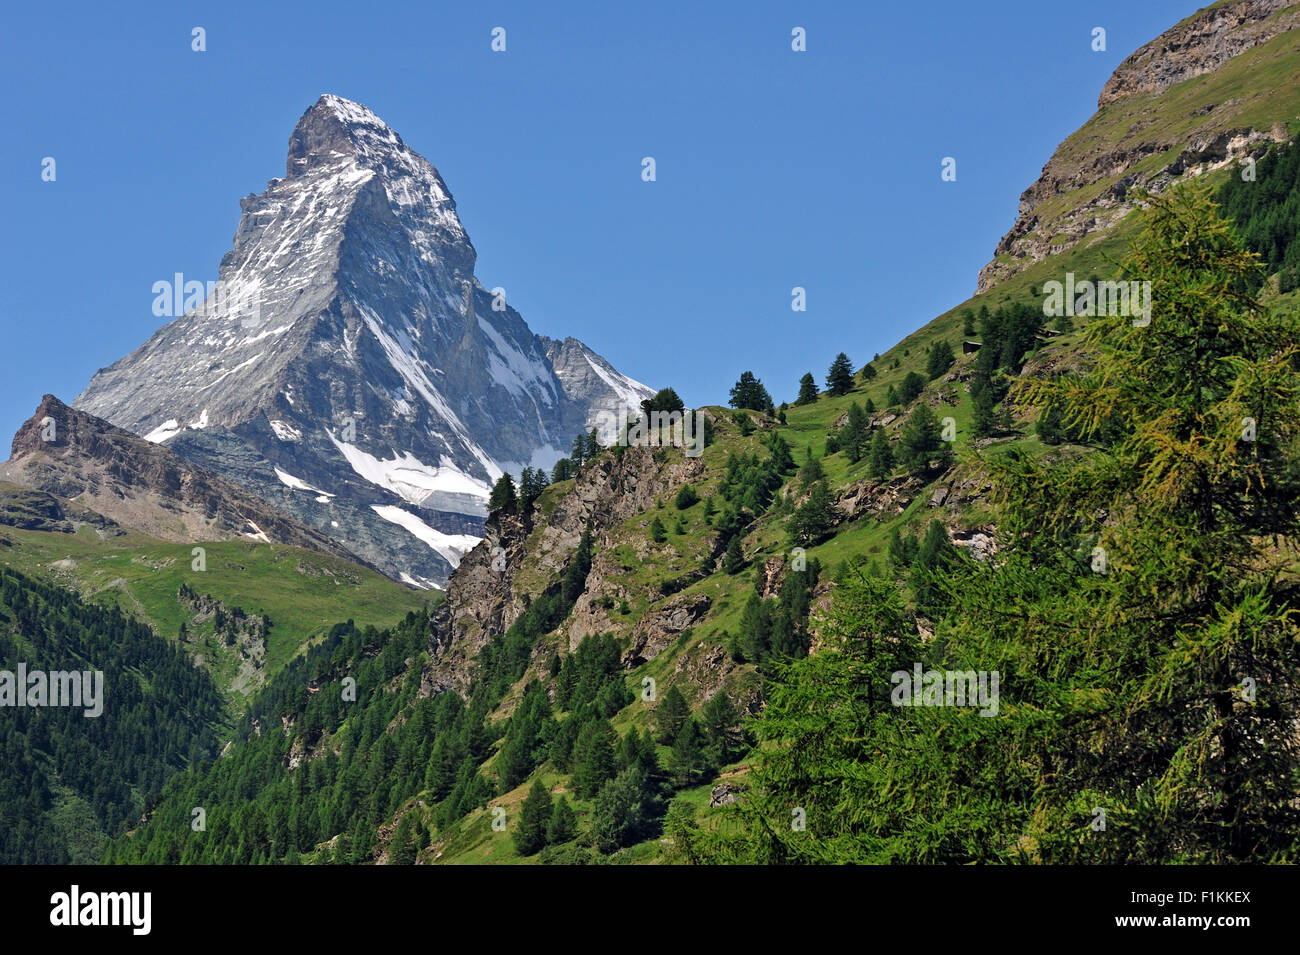 Blick auf das Matterhorn Berg mit Almwiesen und Pinienwälder in den Schweizer Alpen, Wallis / Wallis, Schweiz Stockfoto